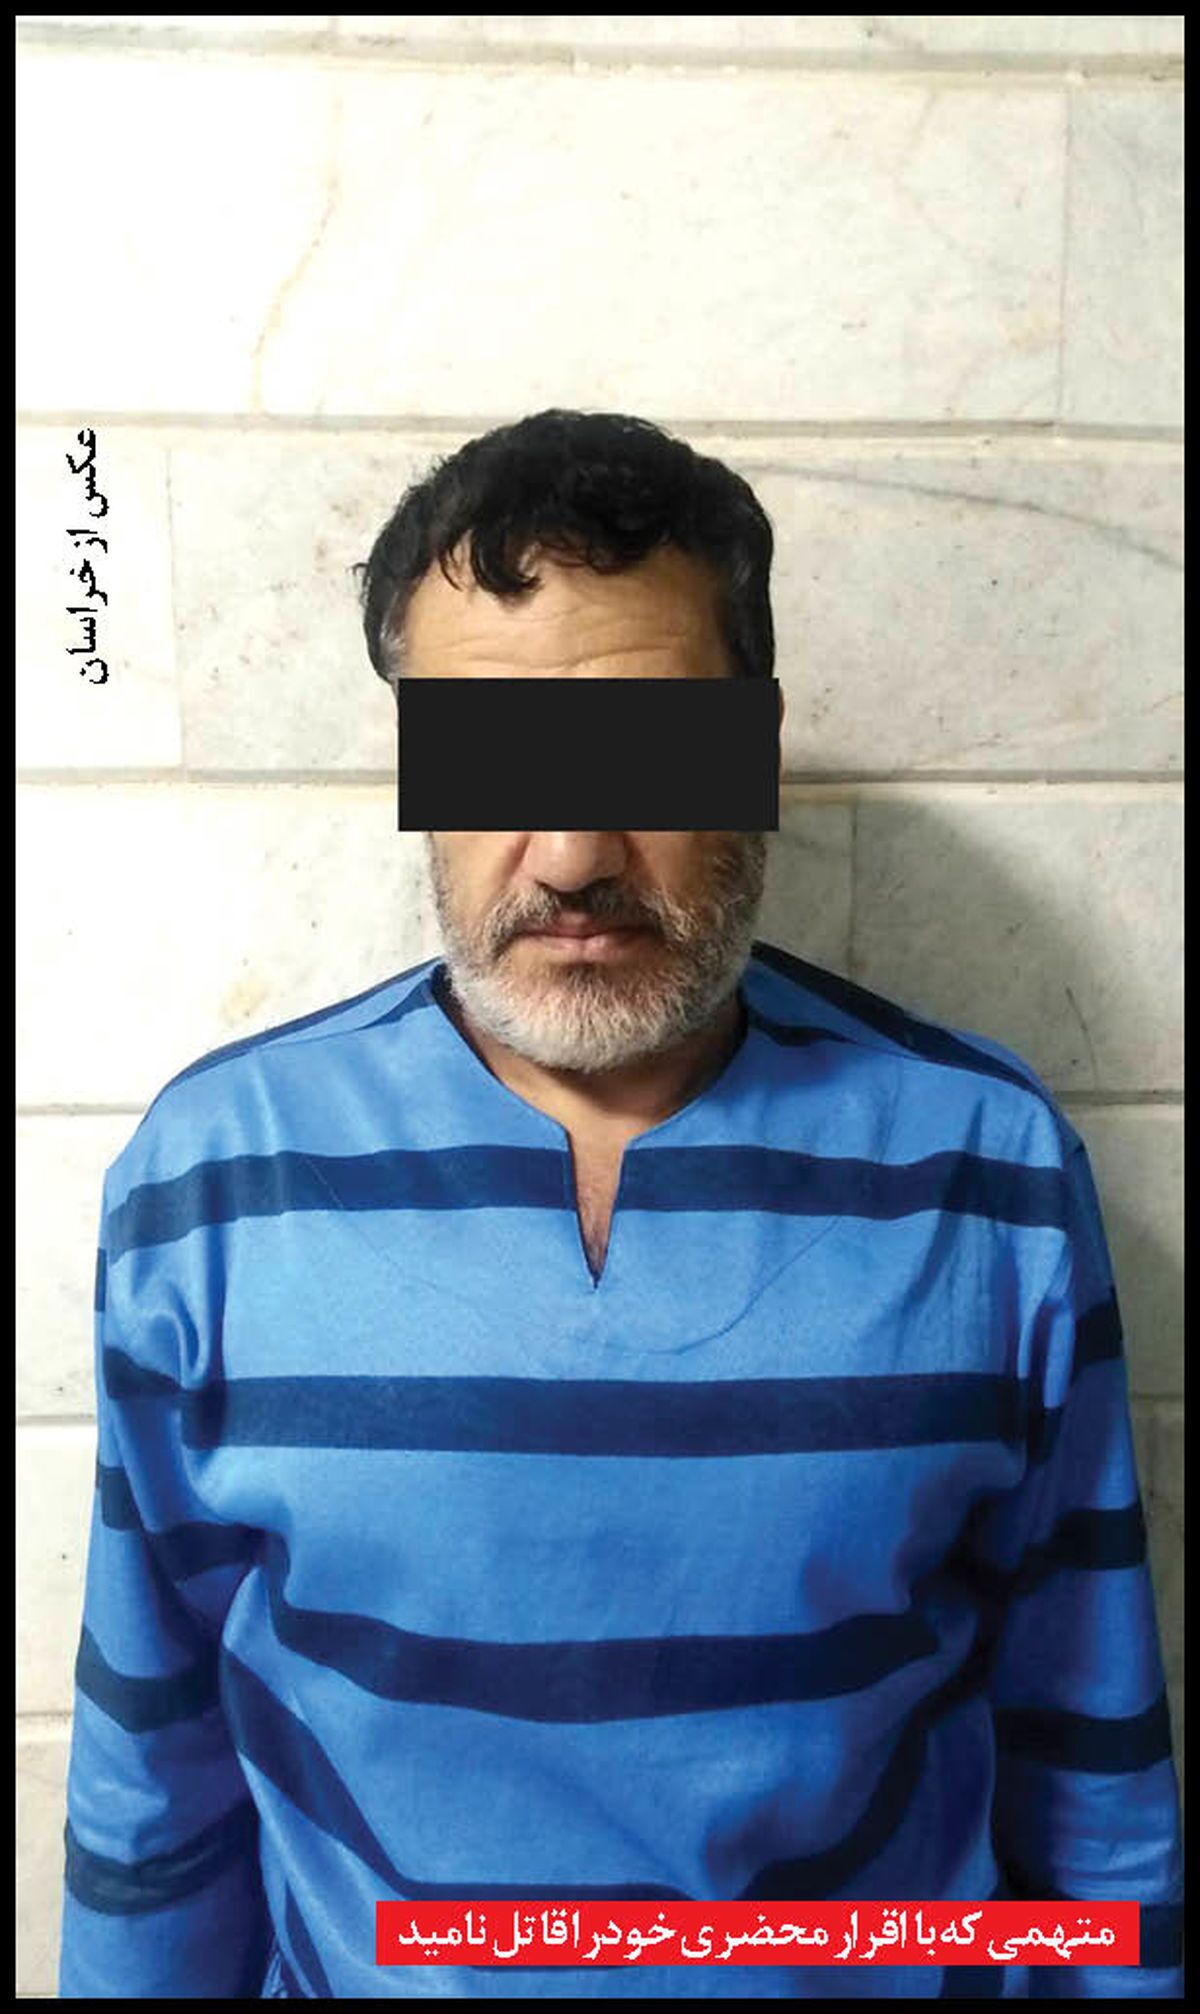 حکم قصاص قاتل مشهدی به دلیل اعتراف محضری یک نفر دیگر، متوقف شد + عکس